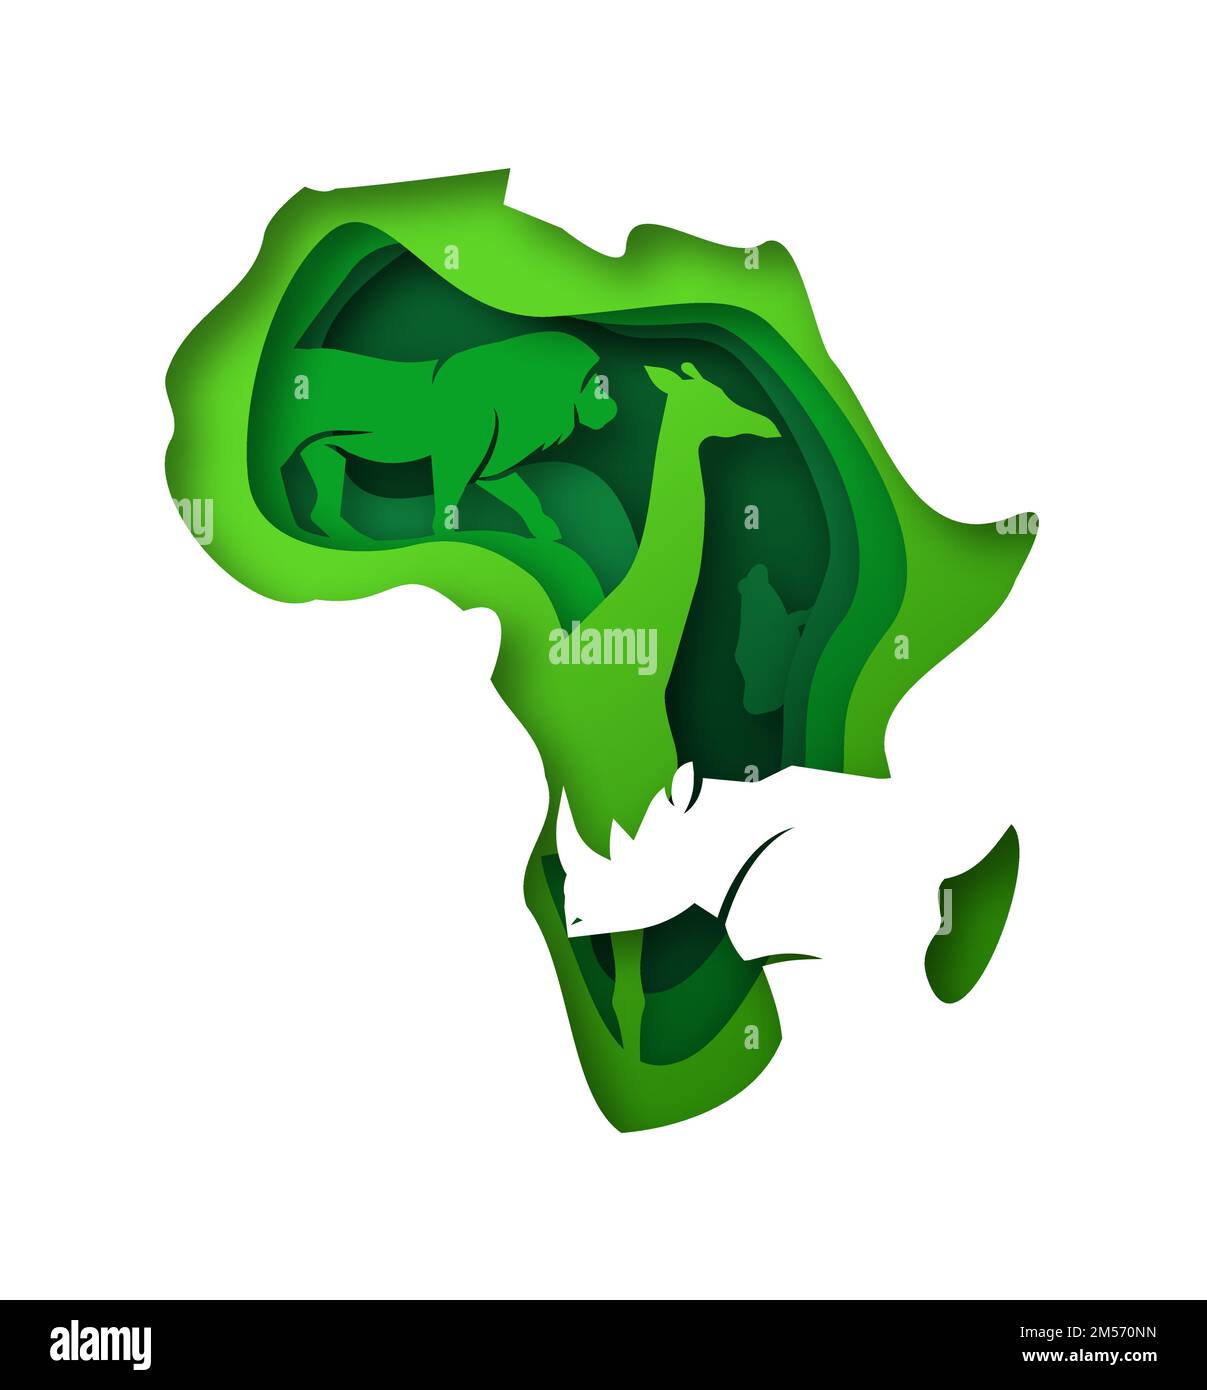 Illustrazione della mappa del continente africano verde in 3d realistico stile di taglio su carta con diversi animali selvatici. Africa eco safari concetto comprende giraffe, rinoc Illustrazione Vettoriale